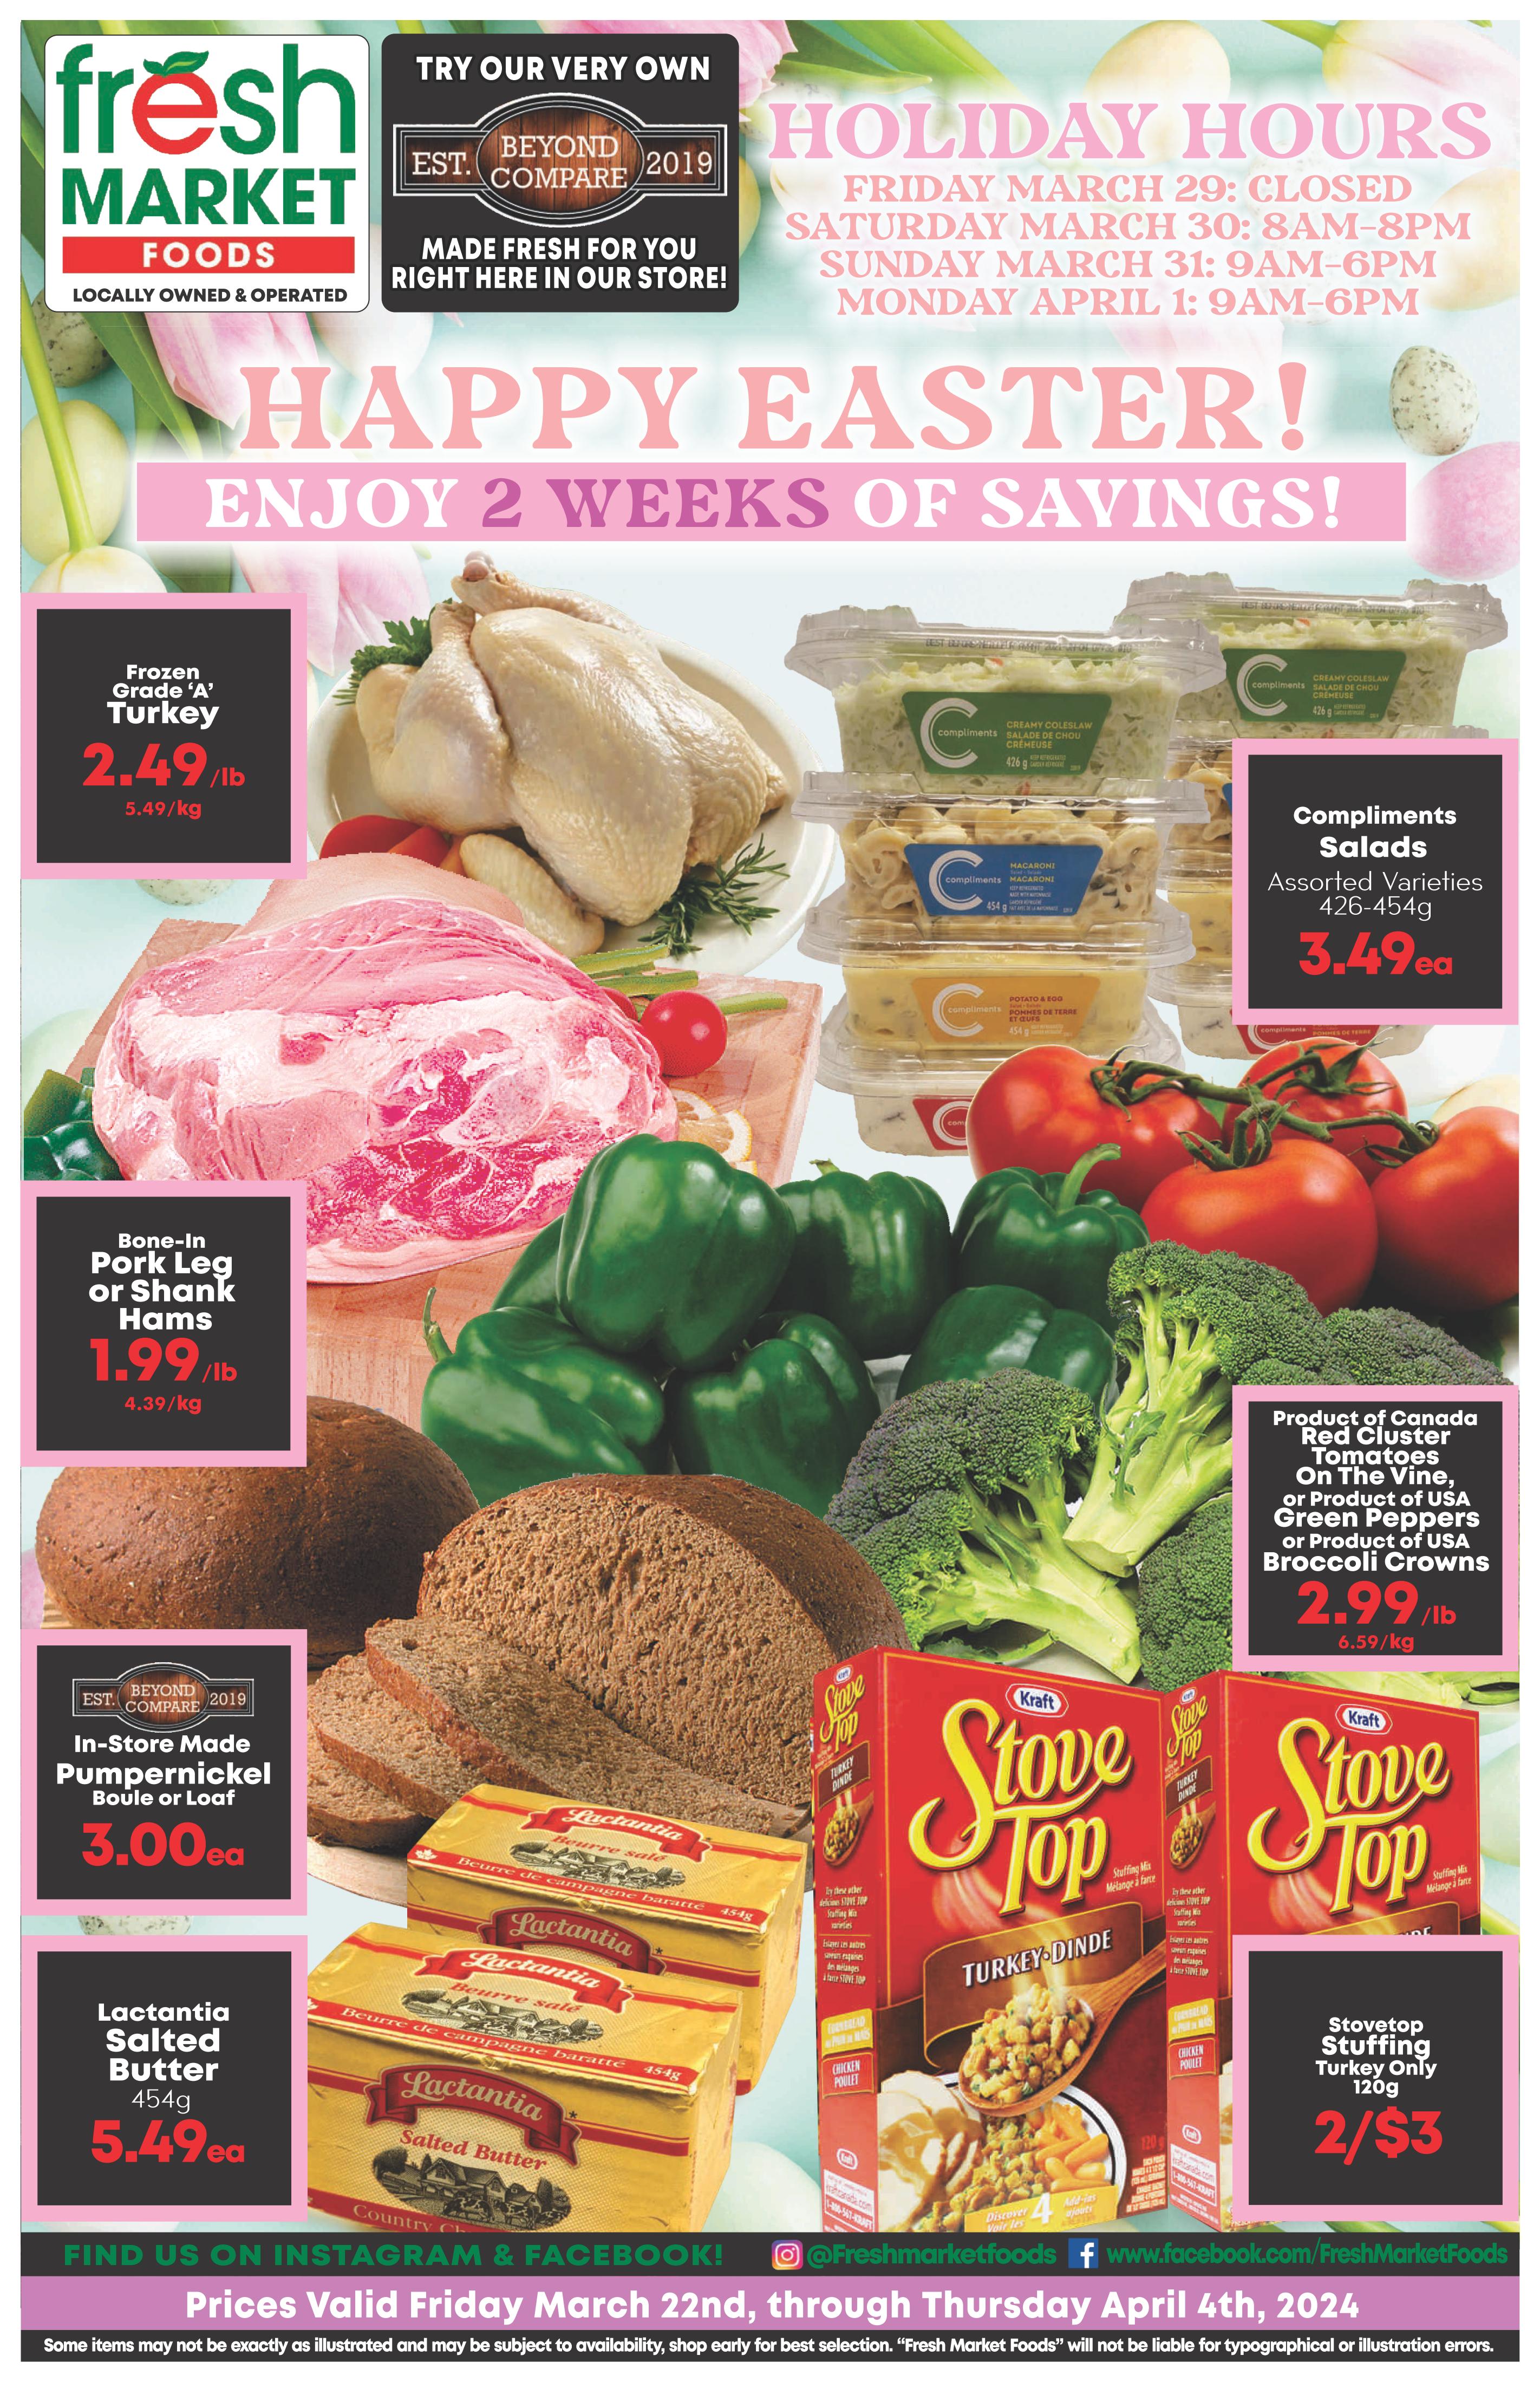 Fresh Market Foods - 2 Weeks of Savings